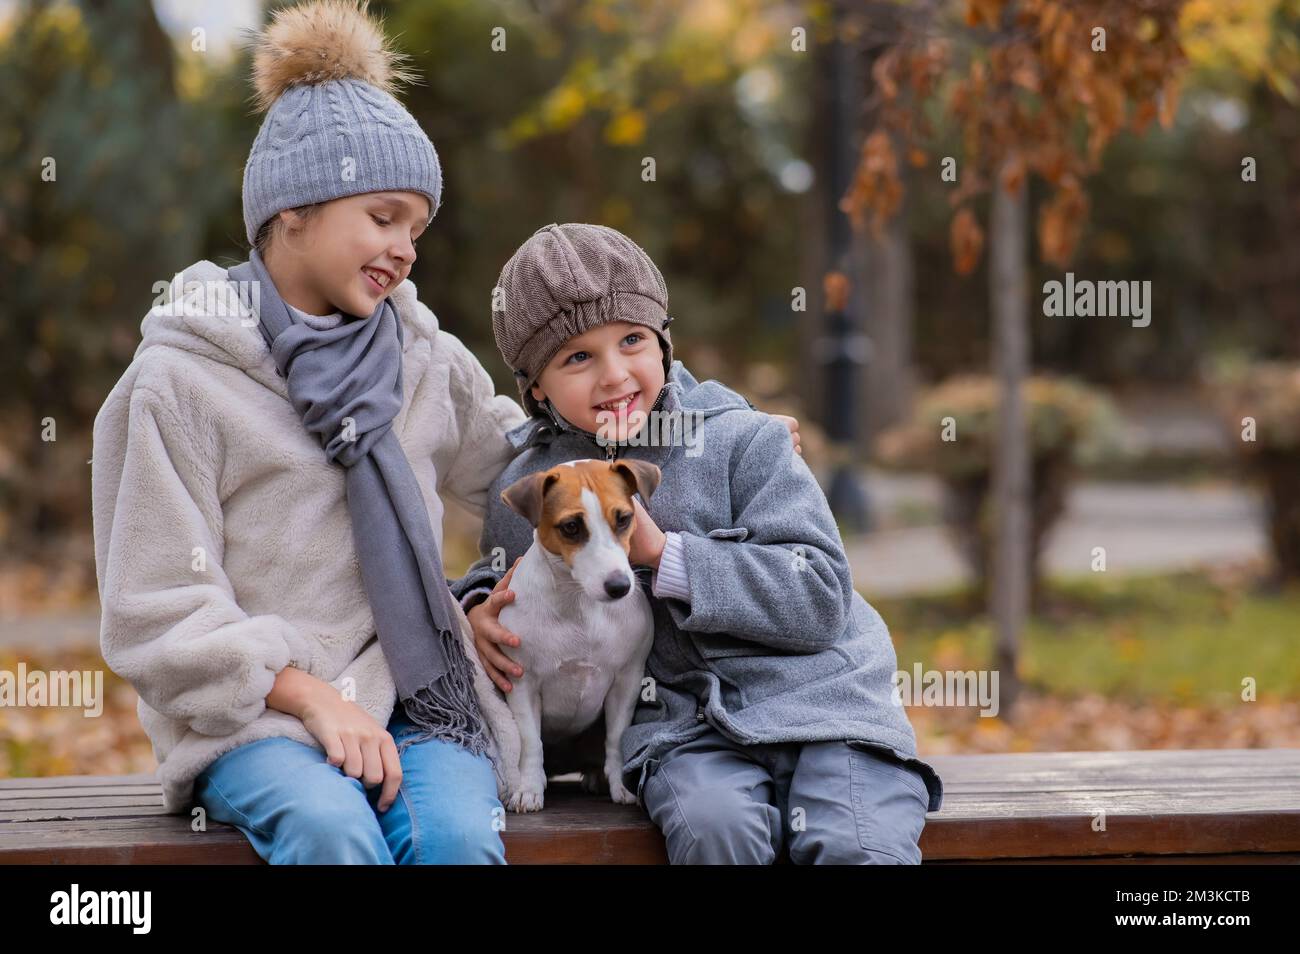 Bruder und Schwester sitzen in einer Umarmung mit einem Hund auf einer Bank für einen Spaziergang im Herbstpark. Junge, Mädchen und Jack russell Terrier. Stockfoto